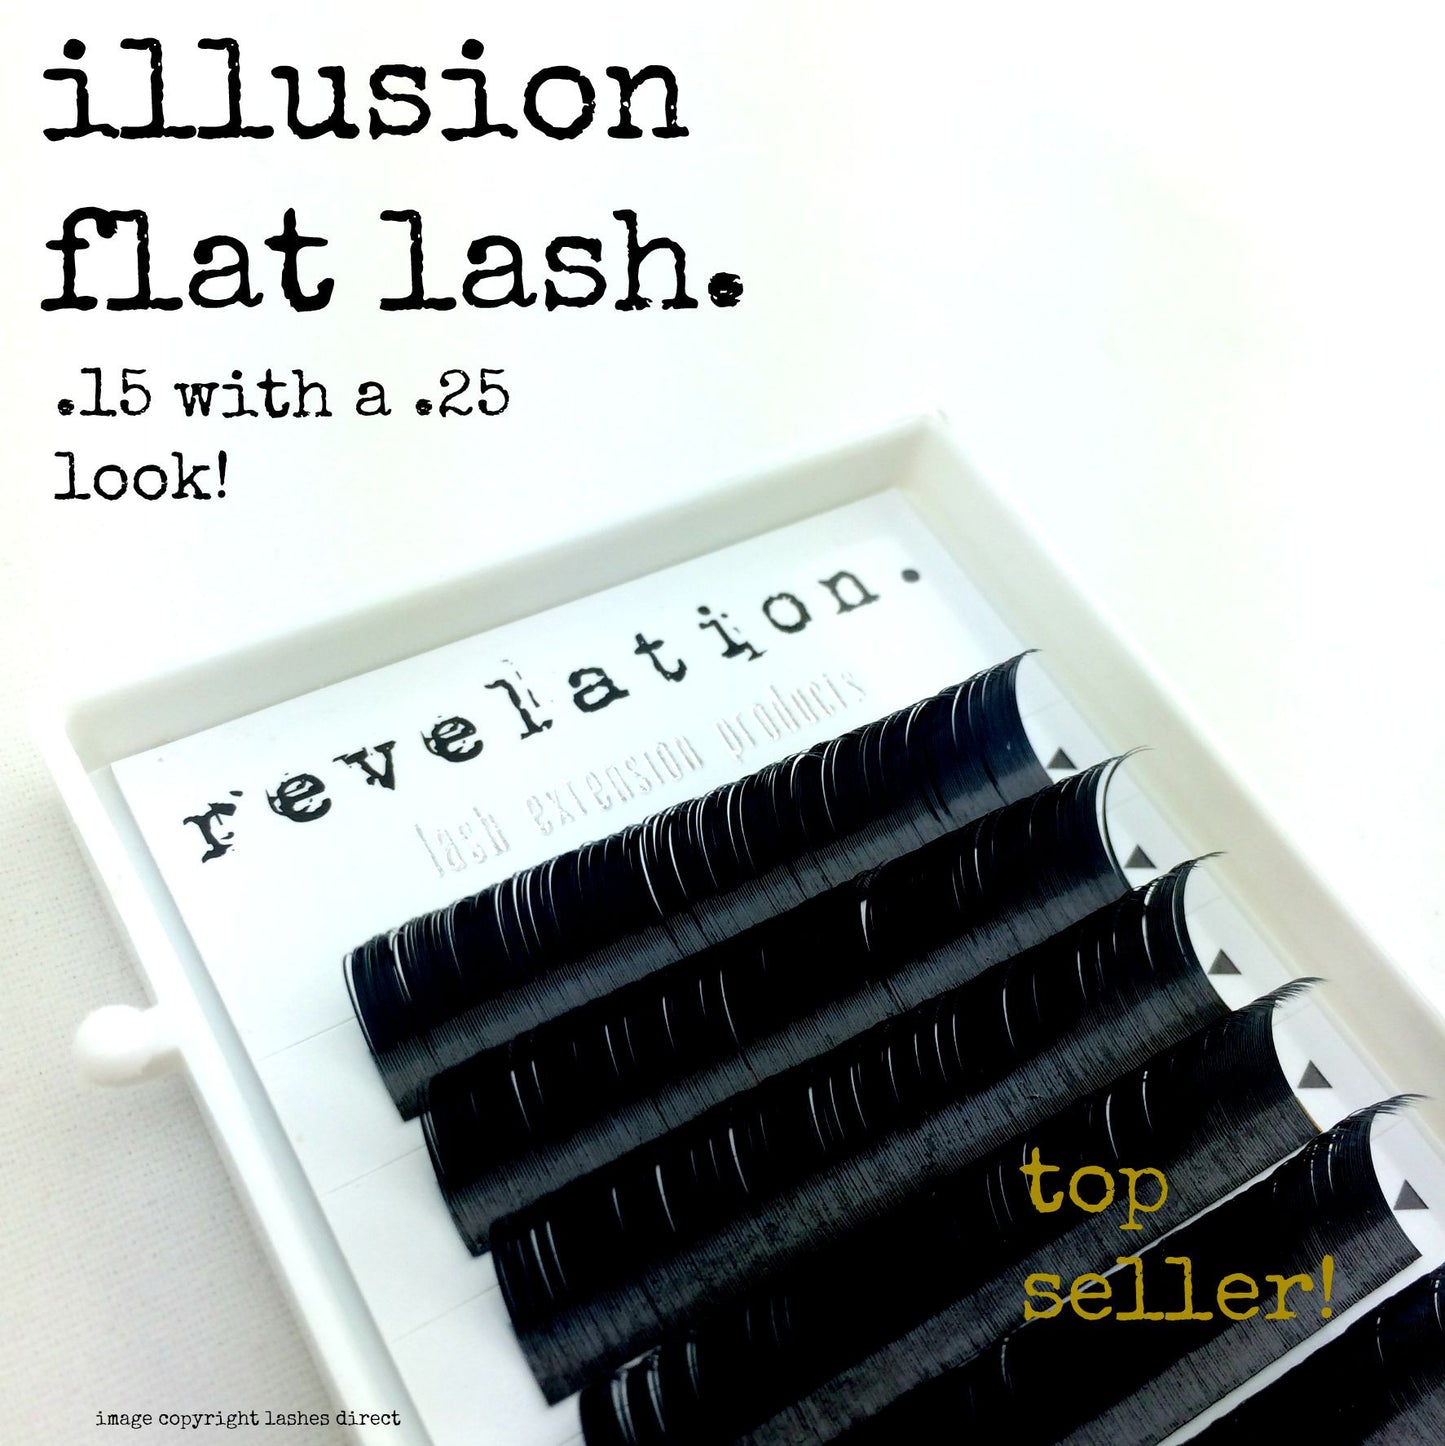 Illusion Flat Lash image of eyelash extension tray. Revelation Lash Extension Products logo